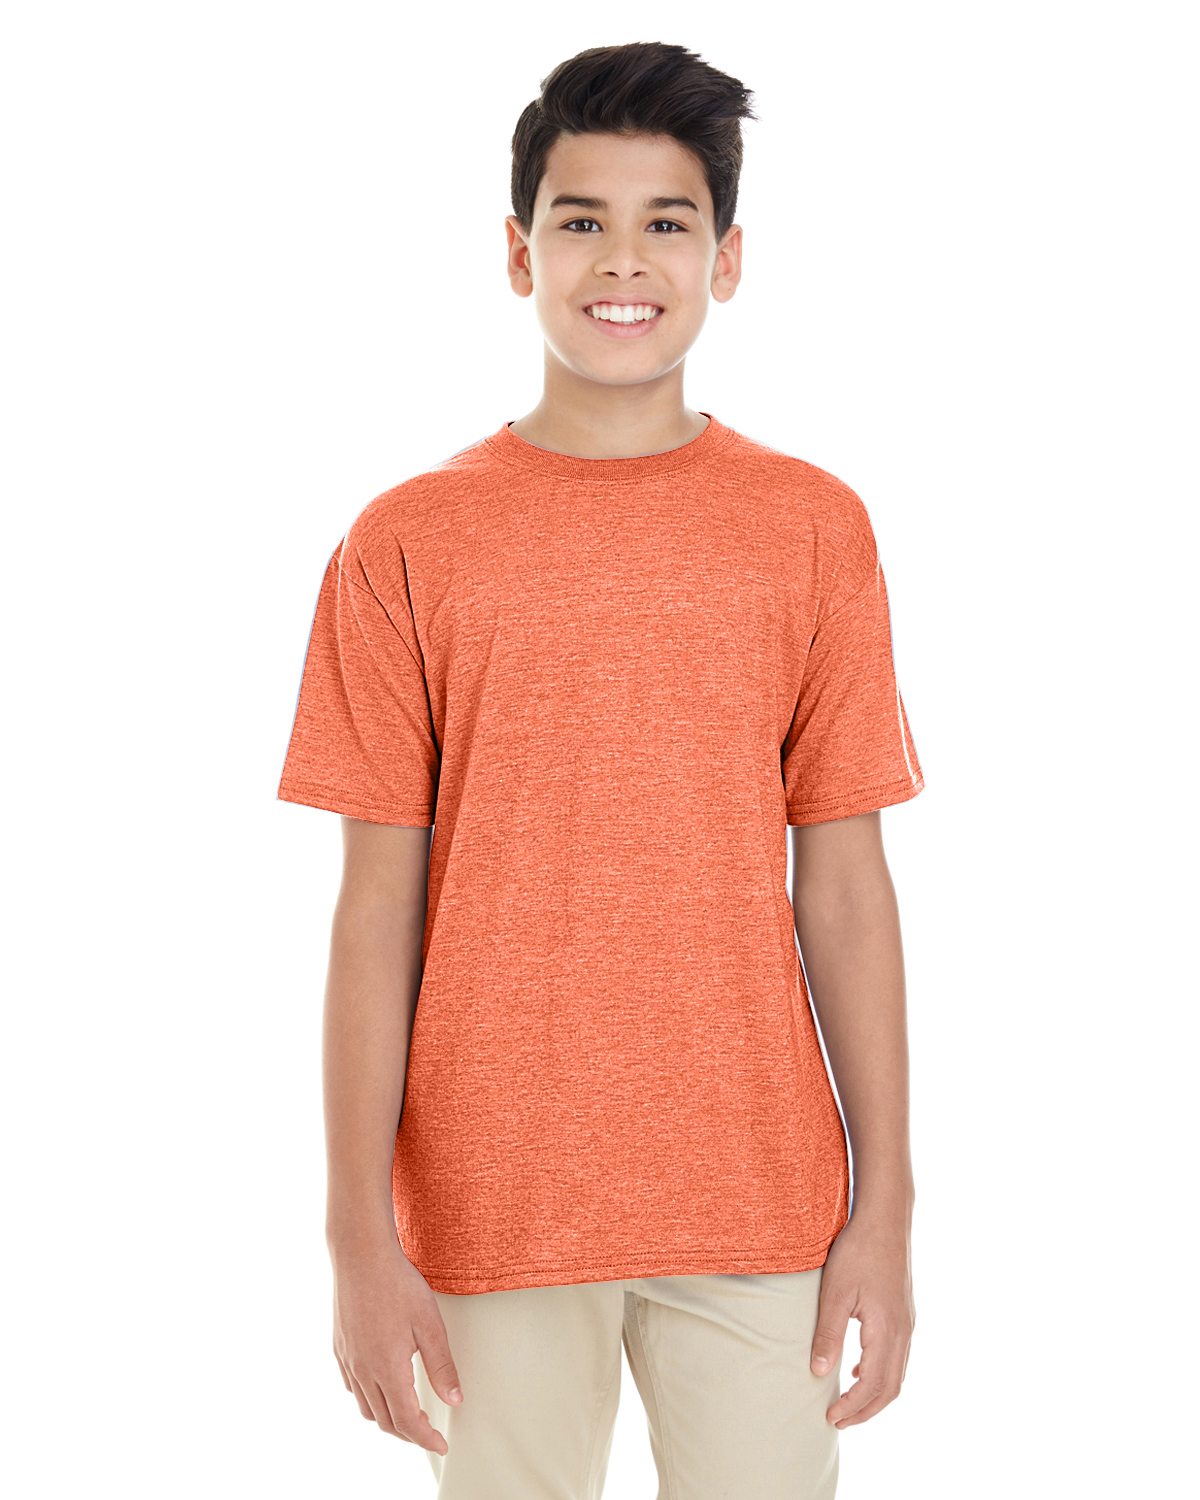 orange t shirt youth